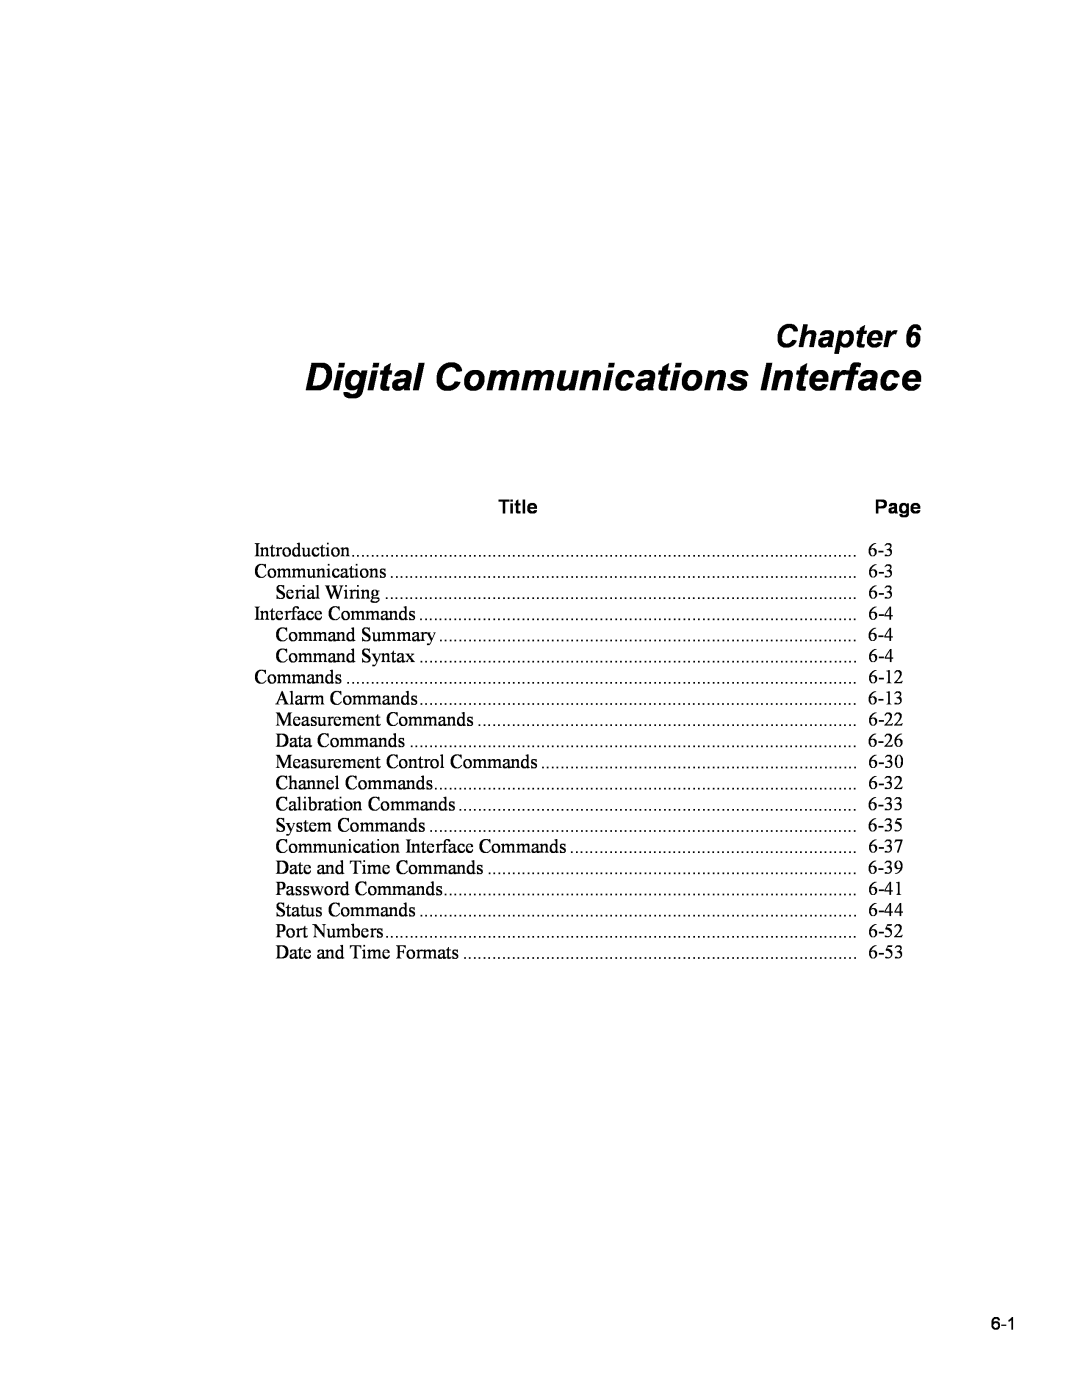 Fluke 5020A Digital Communications Interface, Chapter, Title, Measurement Control Commands, Calibration Commands 